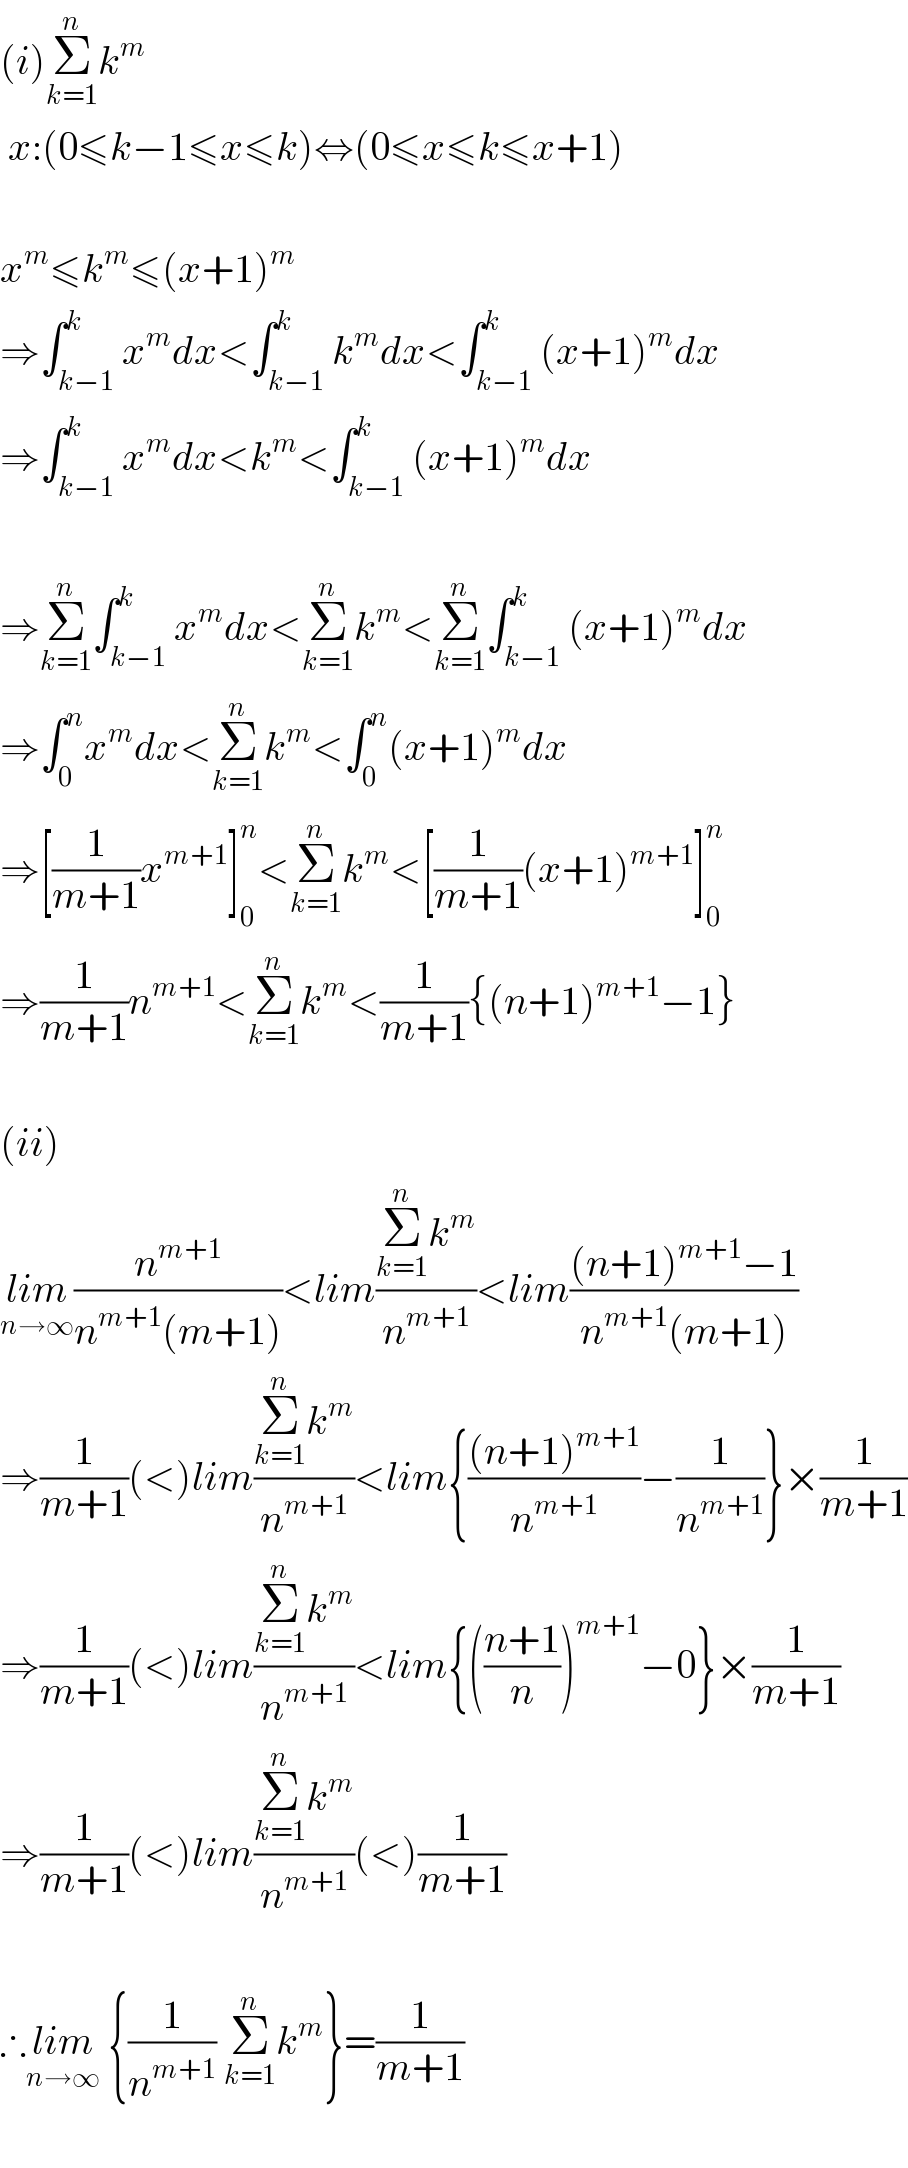 (i)Σ_(k=1) ^n k^m    x:(0≤k−1≤x≤k)⇔(0≤x≤k≤x+1)    x^m ≤k^m ≤(x+1)^m   ⇒∫_(k−1) ^k x^m dx<∫_(k−1) ^k k^m dx<∫_(k−1) ^k (x+1)^m dx  ⇒∫_(k−1) ^k x^m dx<k^m <∫_(k−1) ^k (x+1)^m dx    ⇒Σ_(k=1) ^n ∫_(k−1) ^k x^m dx<Σ_(k=1) ^n k^m <Σ_(k=1) ^n ∫_(k−1) ^k (x+1)^m dx  ⇒∫_0 ^n x^m dx<Σ_(k=1) ^n k^m <∫_0 ^n (x+1)^m dx  ⇒[(1/(m+1))x^(m+1) ]_0 ^n <Σ_(k=1) ^n k^m <[(1/(m+1))(x+1)^(m+1) ]_0 ^n   ⇒(1/(m+1))n^(m+1) <Σ_(k=1) ^n k^m <(1/(m+1)){(n+1)^(m+1) −1}    (ii)  lim_(n→∞) (n^(m+1) /(n^(m+1) (m+1)))<lim((Σ_(k=1) ^n k^m )/n^(m+1) )<lim(((n+1)^(m+1) −1)/(n^(m+1) (m+1)))  ⇒(1/(m+1))(<)lim((Σ_(k=1) ^n k^m )/n^(m+1) )<lim{(((n+1)^(m+1) )/n^(m+1) )−(1/n^(m+1) )}×(1/(m+1))  ⇒(1/(m+1))(<)lim((Σ_(k=1) ^n k^m )/n^(m+1) )<lim{(((n+1)/n))^(m+1) −0}×(1/(m+1))  ⇒(1/(m+1))(<)lim((Σ_(k=1) ^n k^m )/n^(m+1) )(<)(1/(m+1))    ∴lim_(n→∞)  {(1/n^(m+1) ) Σ_(k=1) ^n k^m }=(1/(m+1))    